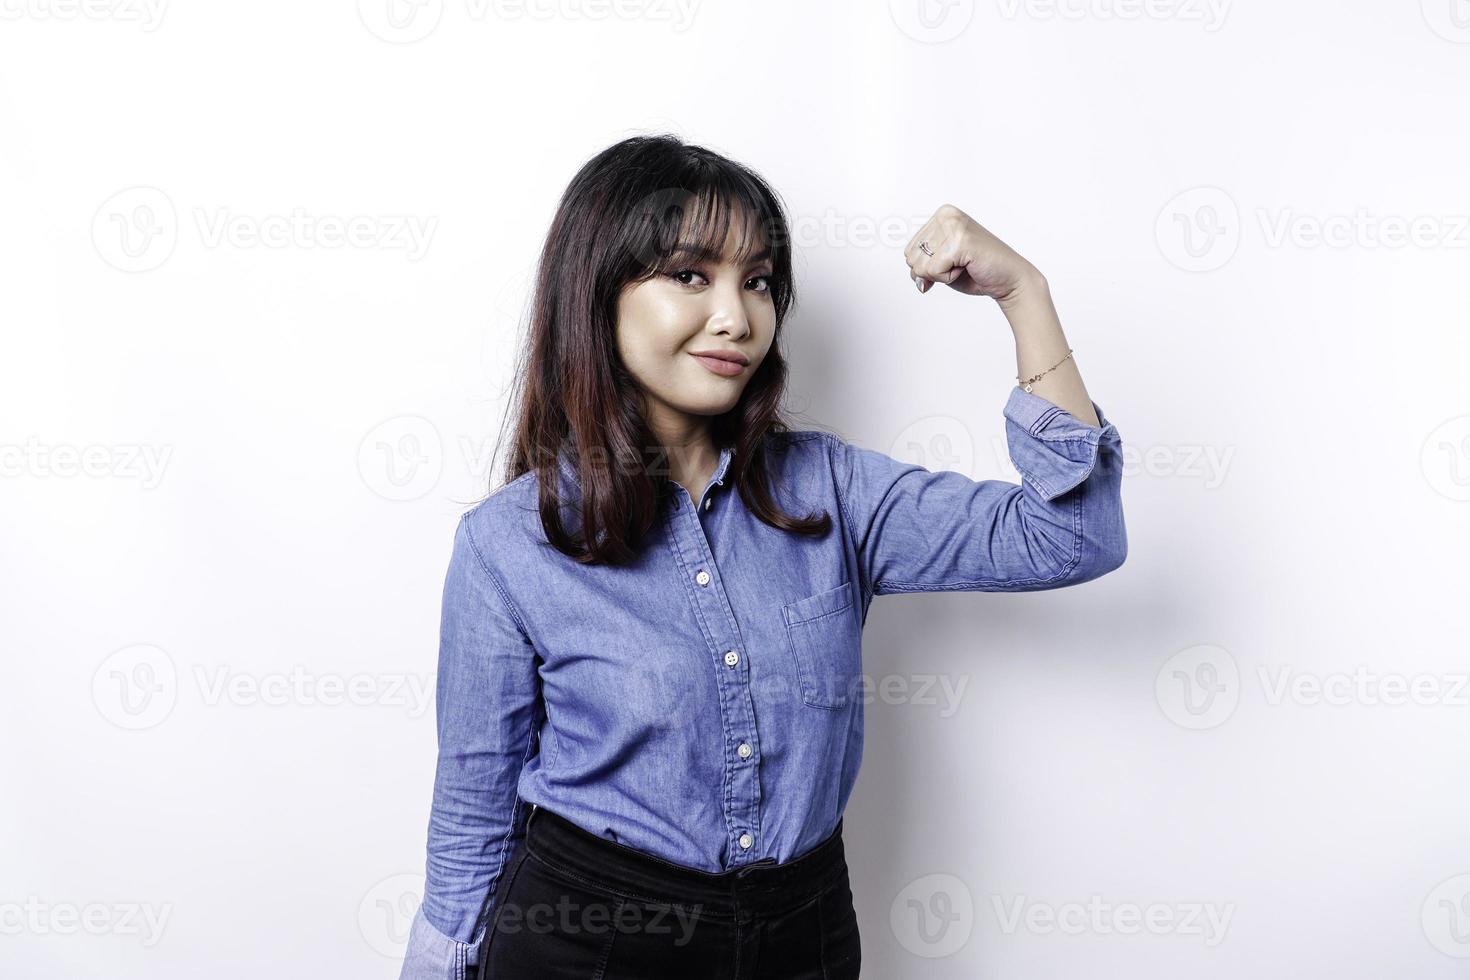 mujer asiática emocionada con una camisa azul que muestra un gesto fuerte levantando los brazos y los músculos sonriendo con orgullo foto